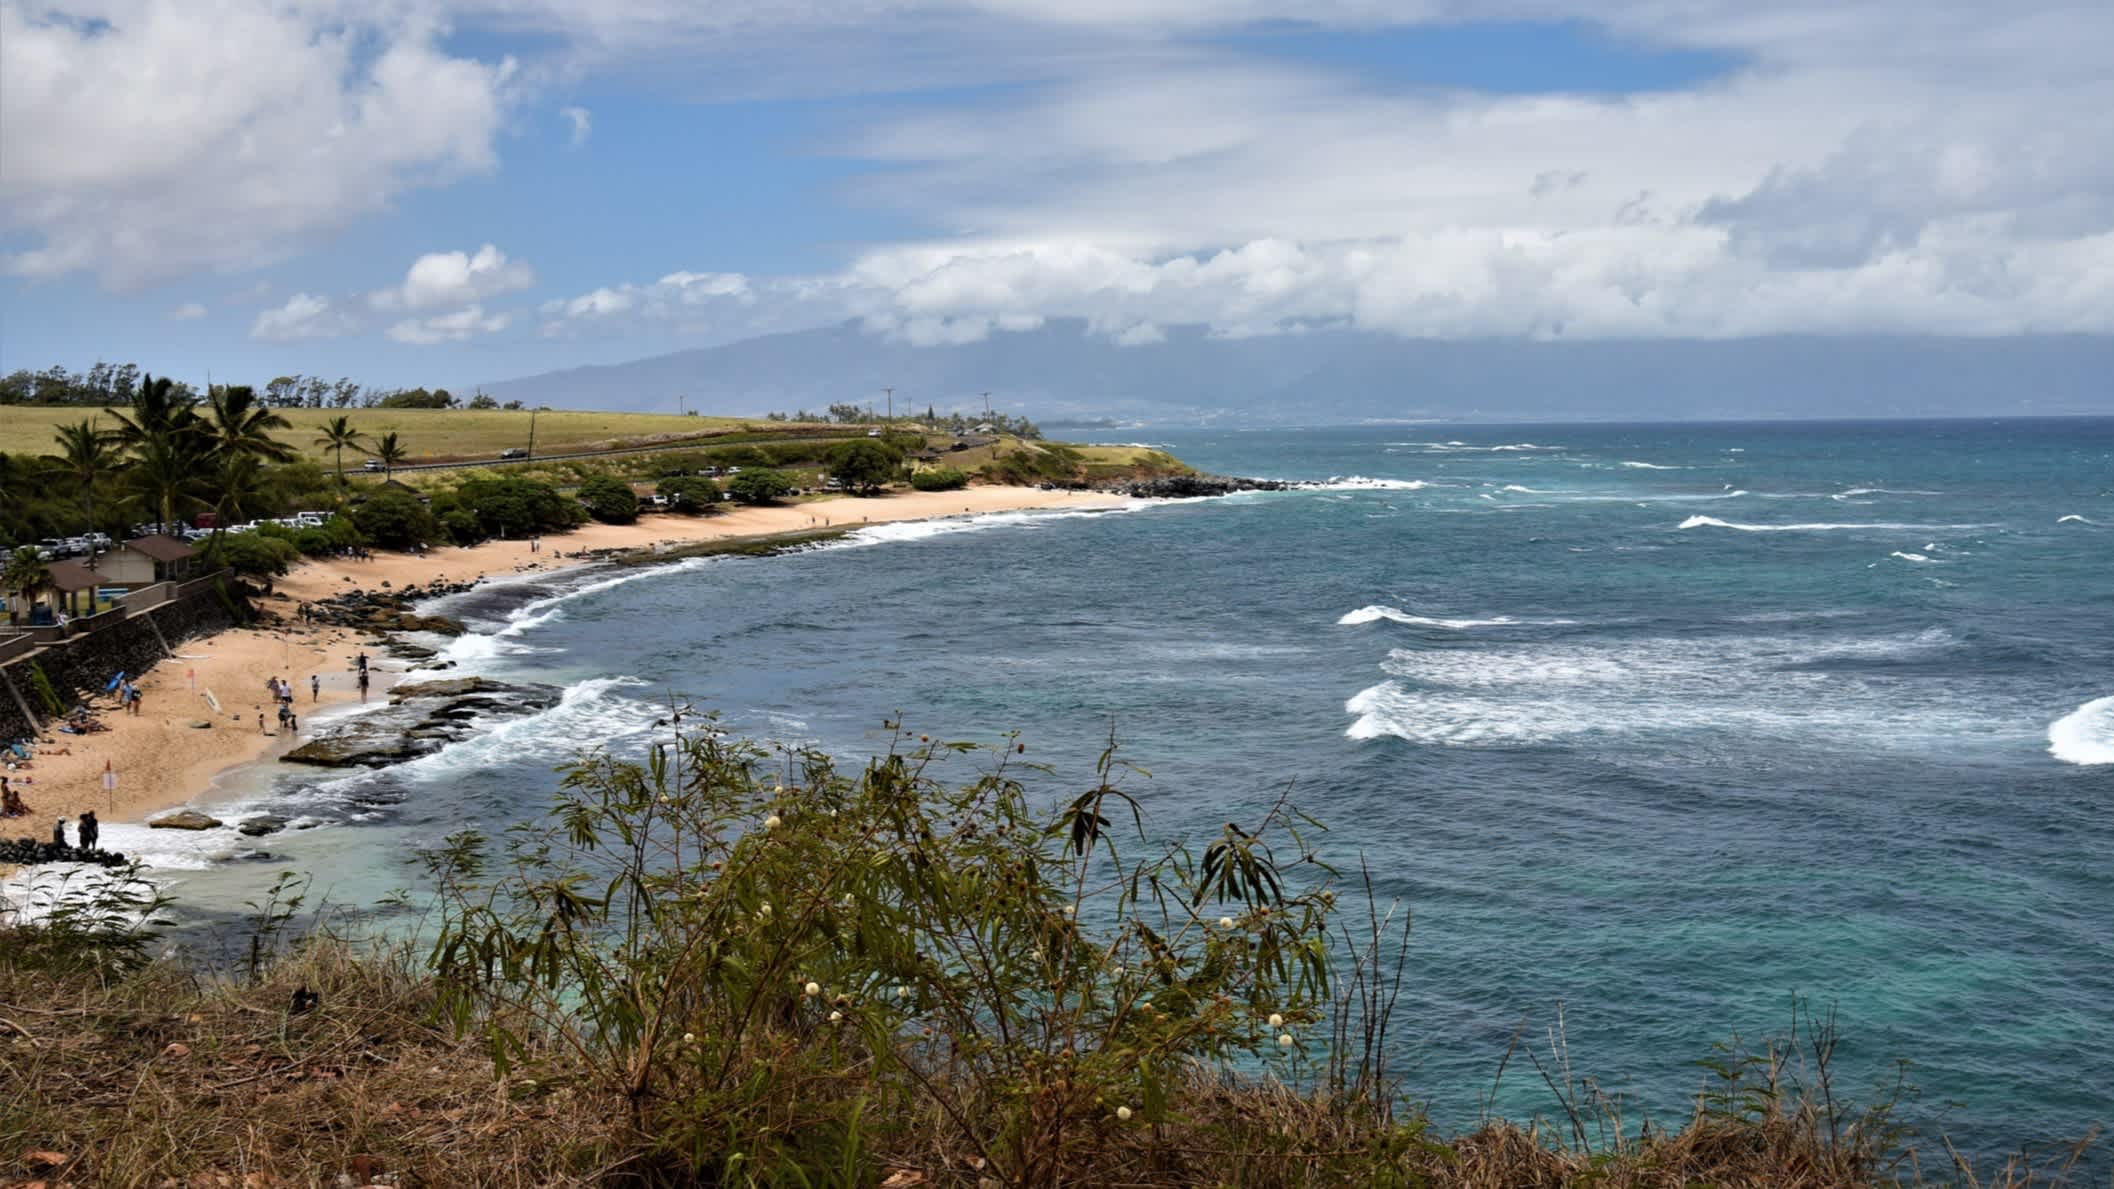 Der Strand Hookipa-Strand, Maui, Hawaii, USA bei Sonnenschein und mit Blick auf das wellige Meer sowie die Küste von einem Viewpoint aus.